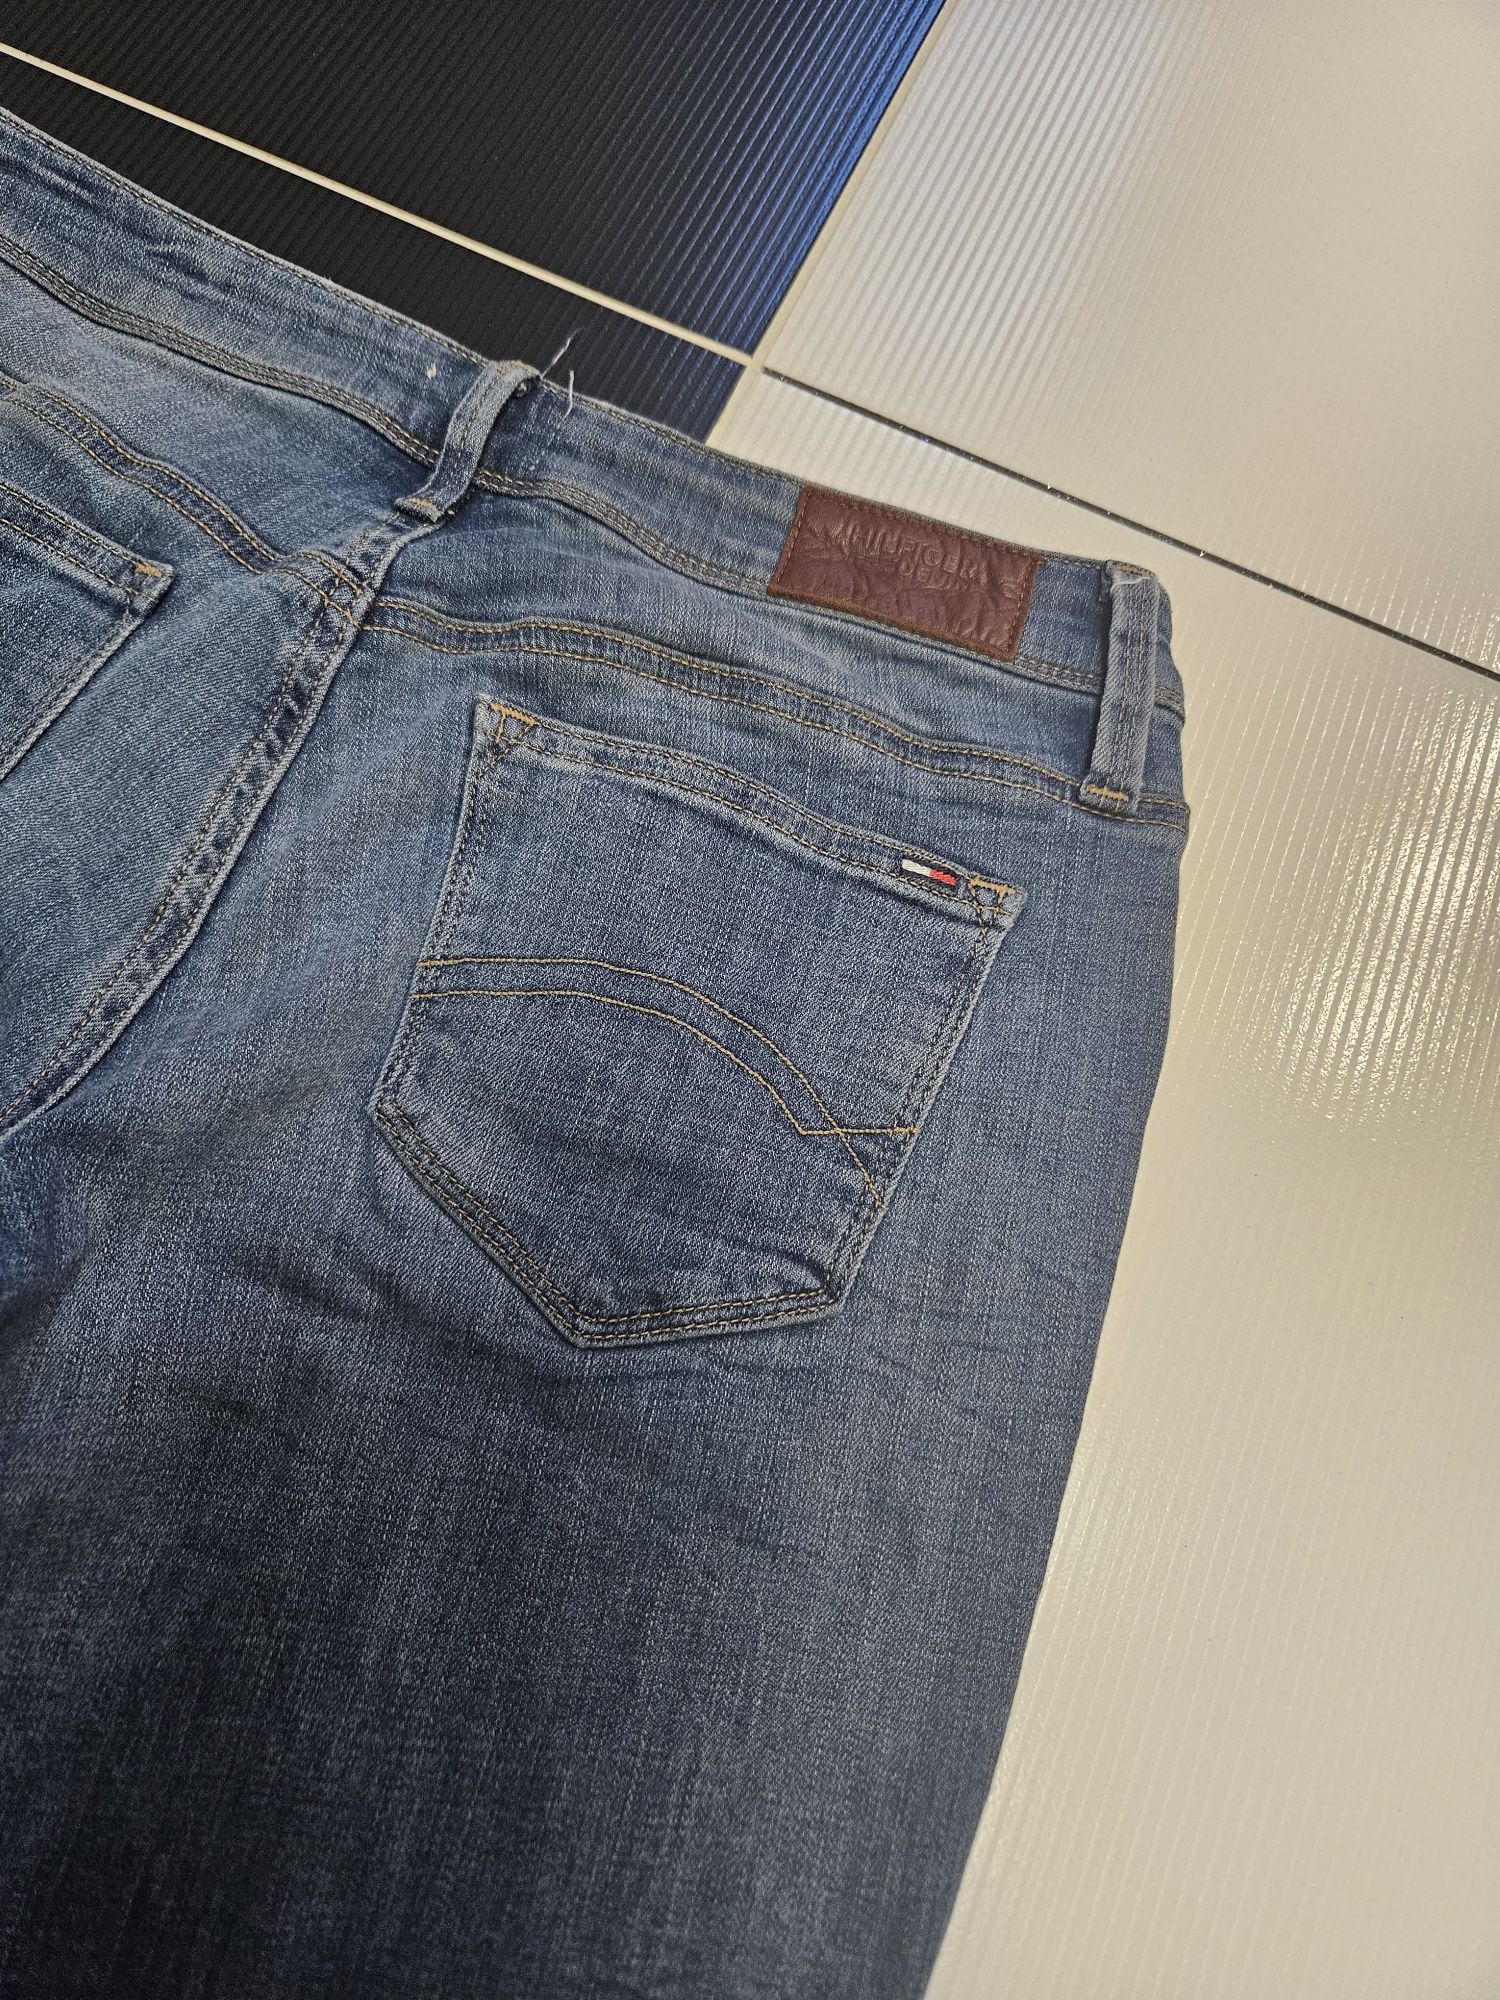 Jeans ideał tommy 27.5 jasne spodnie